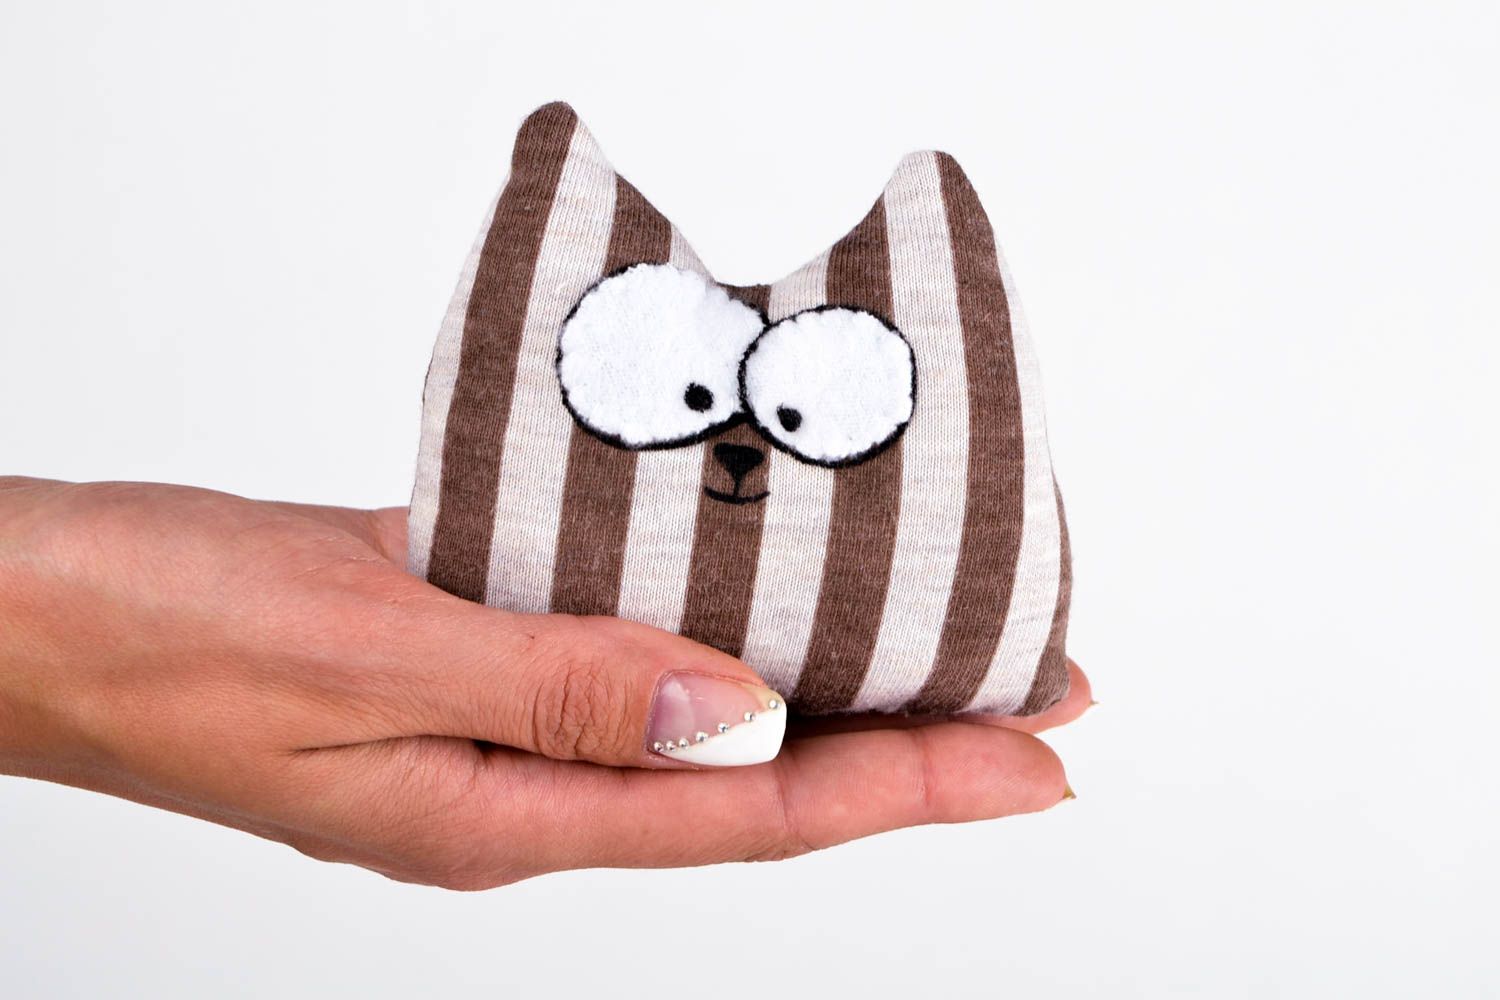 Авторская игрушка ручной работы игрушка из ткани полосатая игрушка кот смешной  фото 2